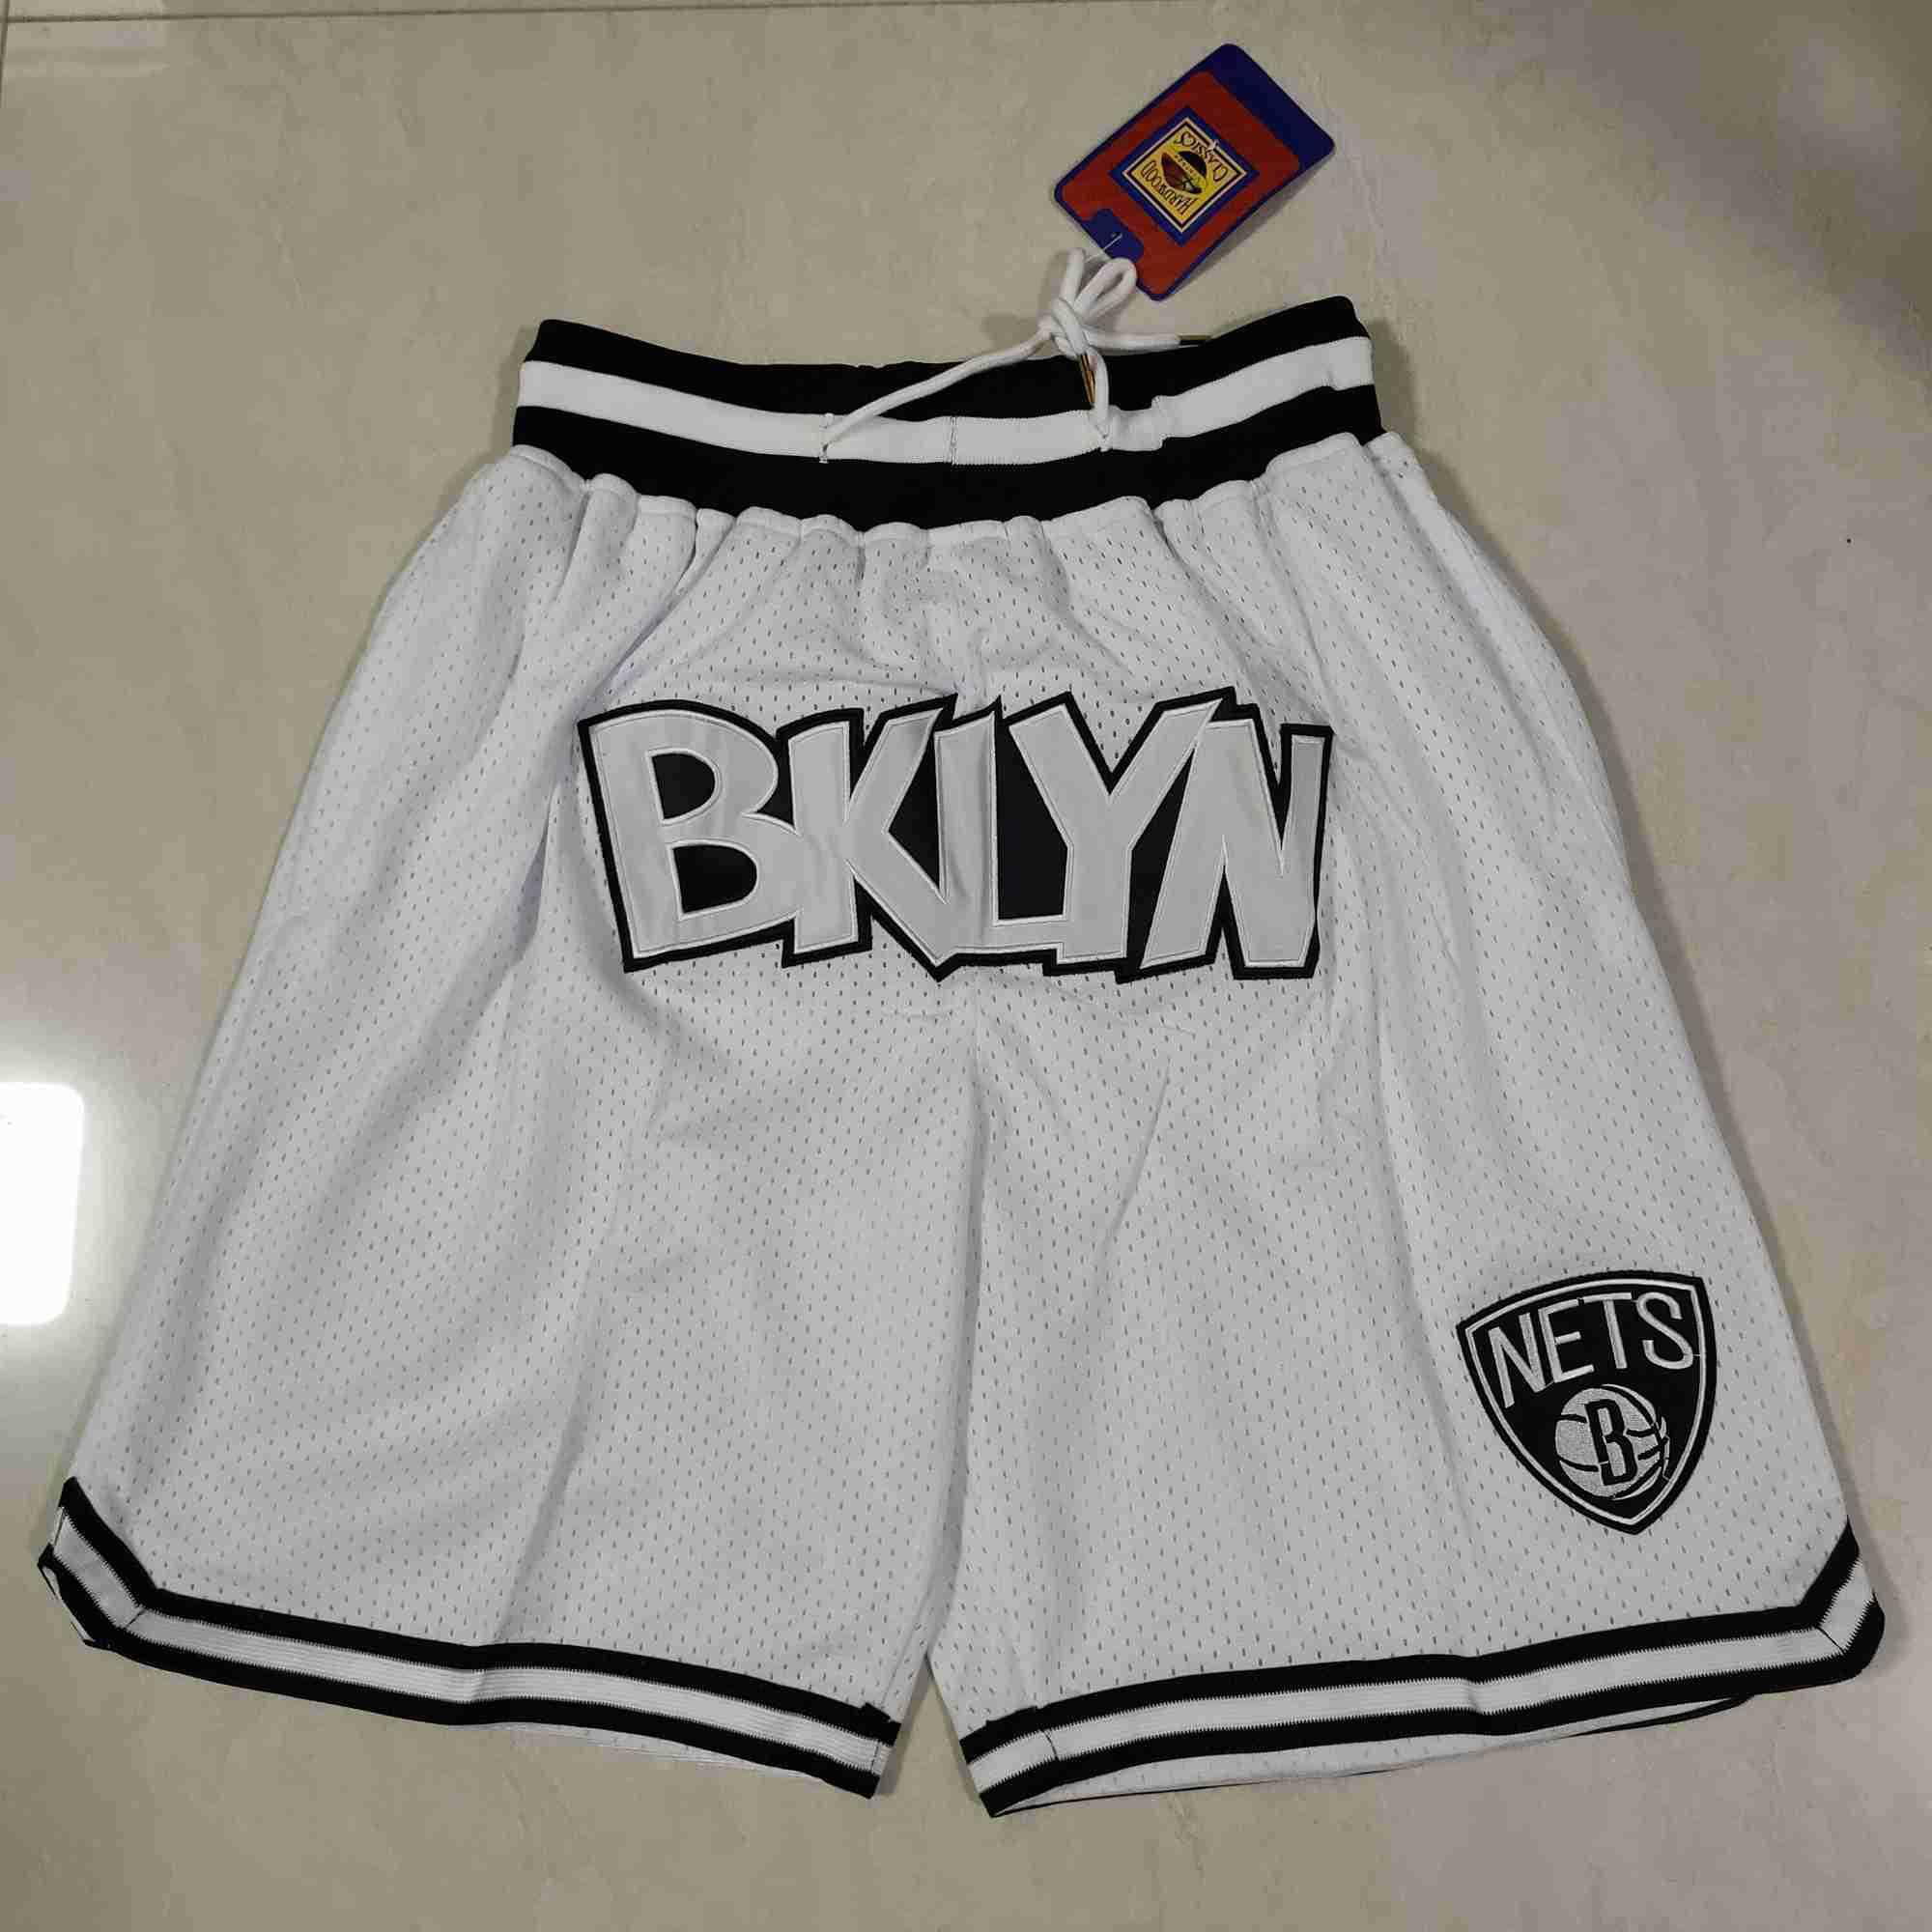 brooklyn shorts nba